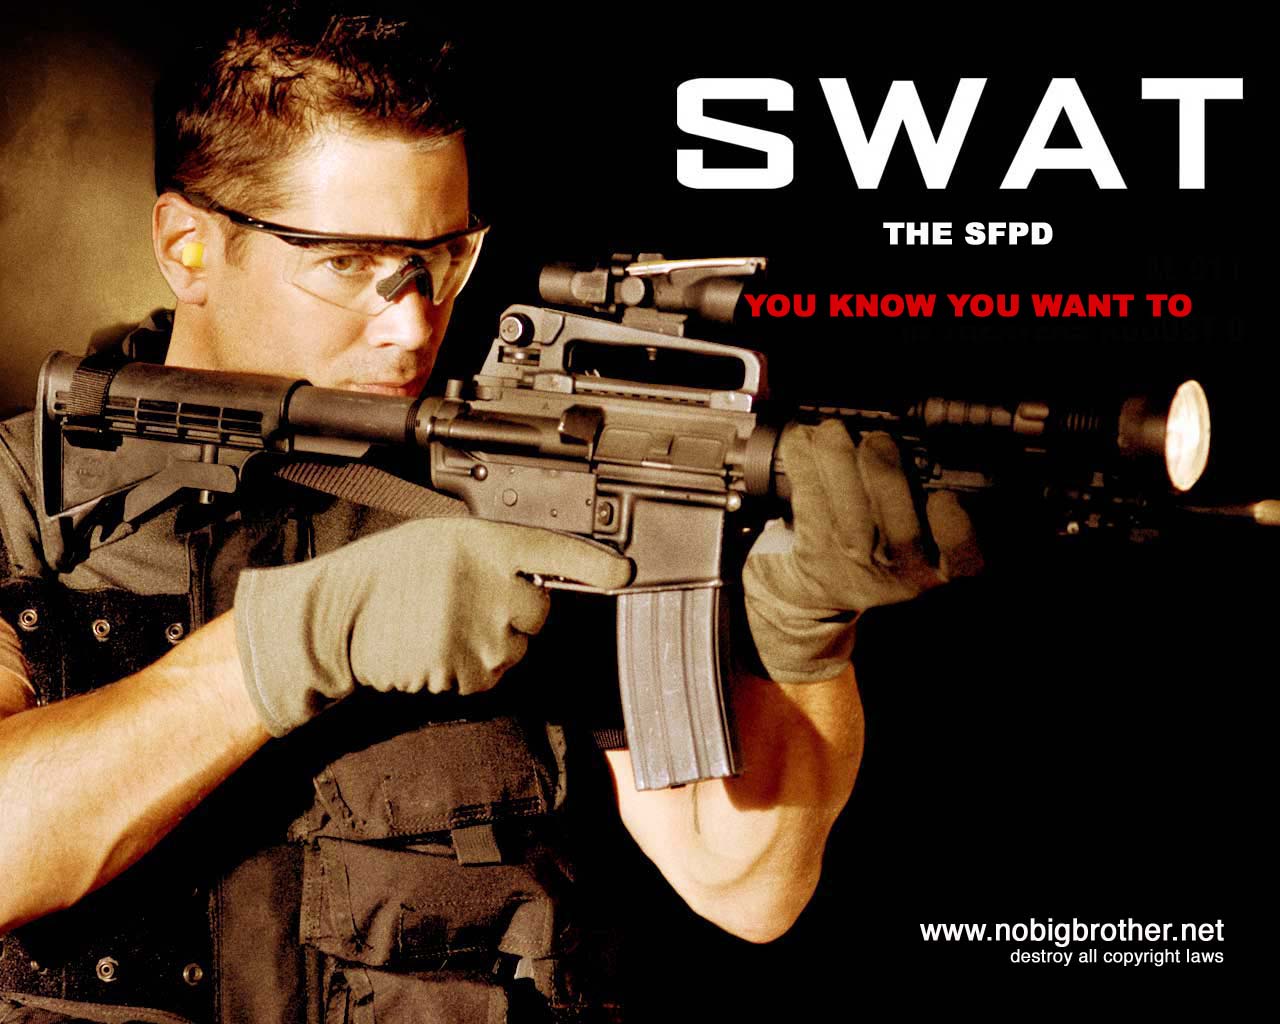 swat-sfpd.jpg 